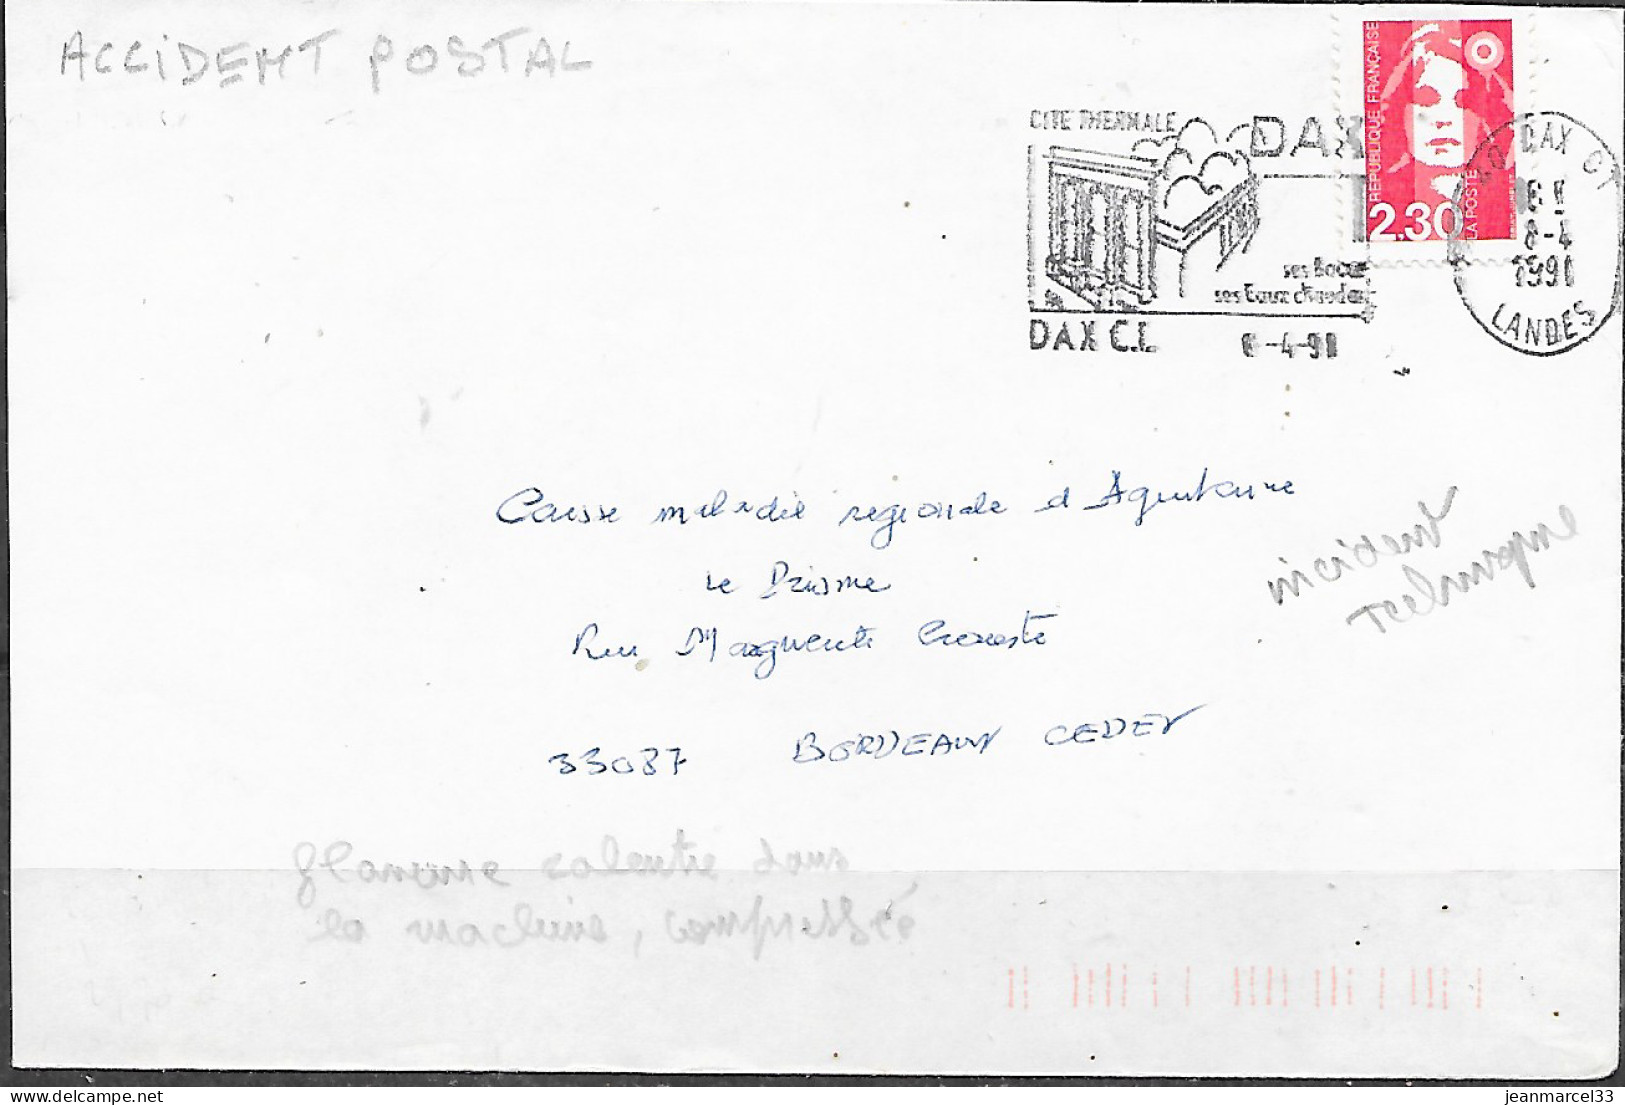 Accident Postal Flamme Compressé Dan La Machine Dax CT Du 8-4 91 Flamme Curieuse - Covers & Documents